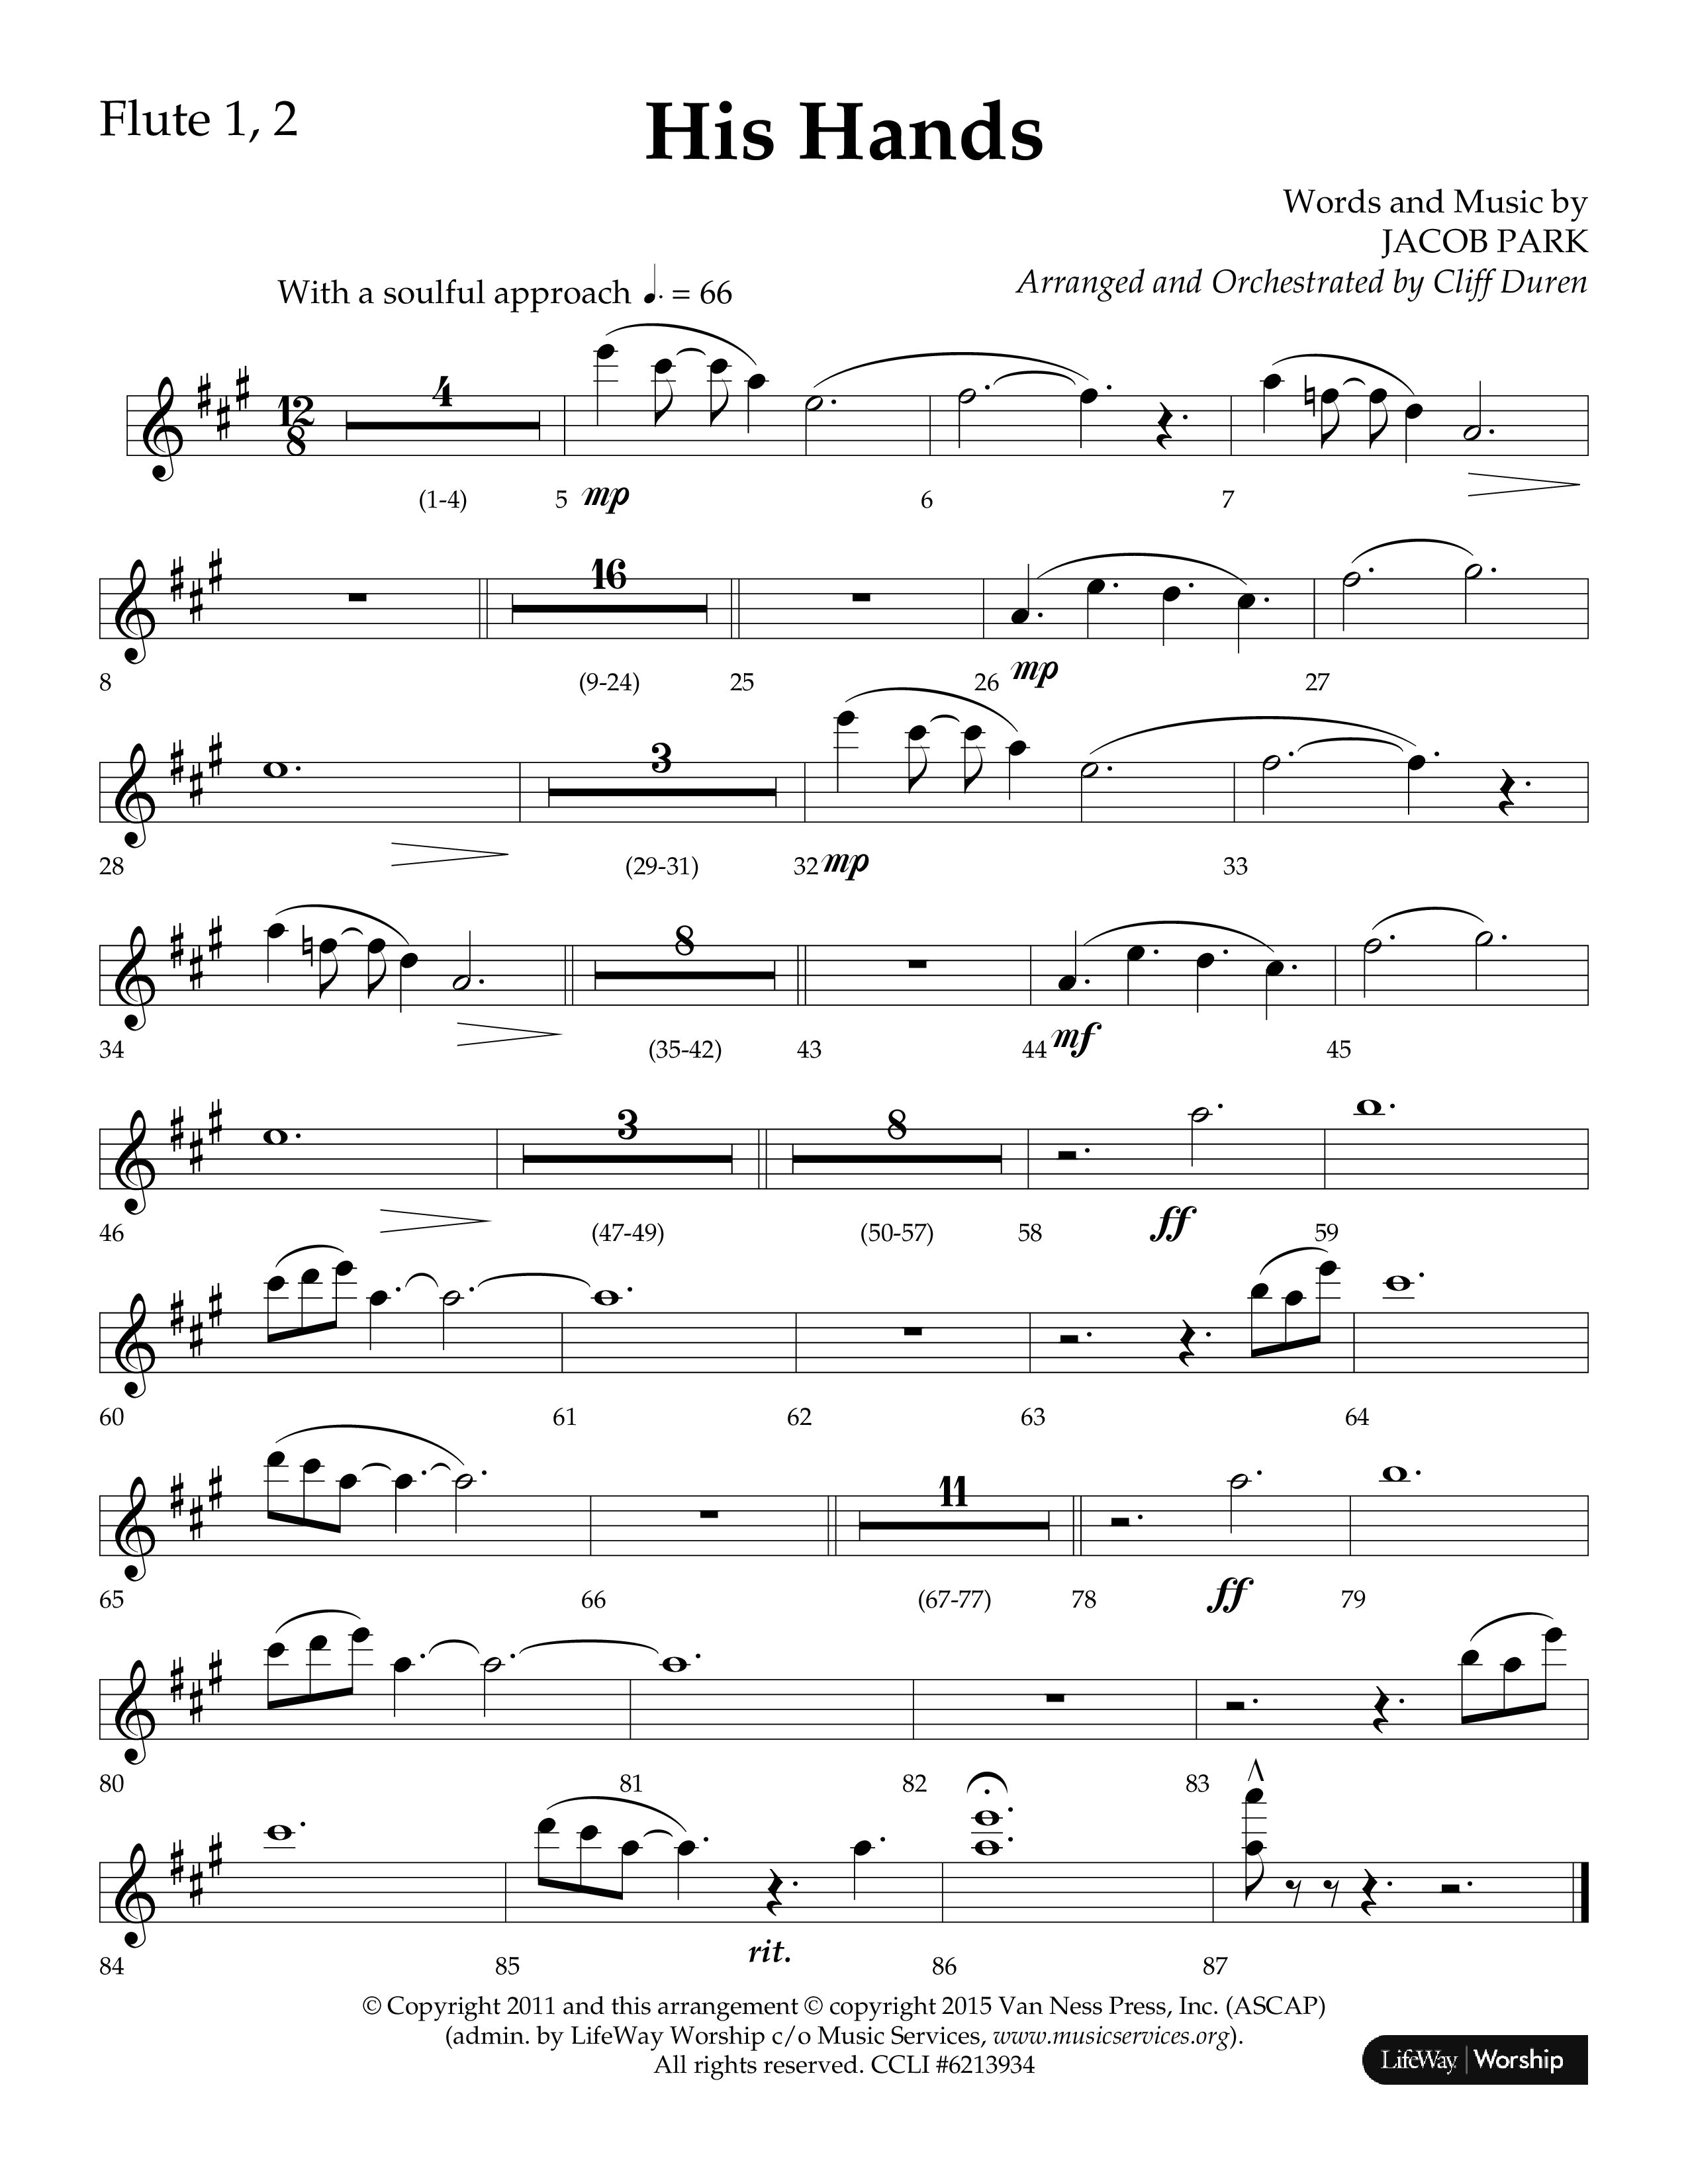 His Hands (Choral Anthem SATB) Flute 1/2 (Lifeway Choral / Arr. Cliff Duren)